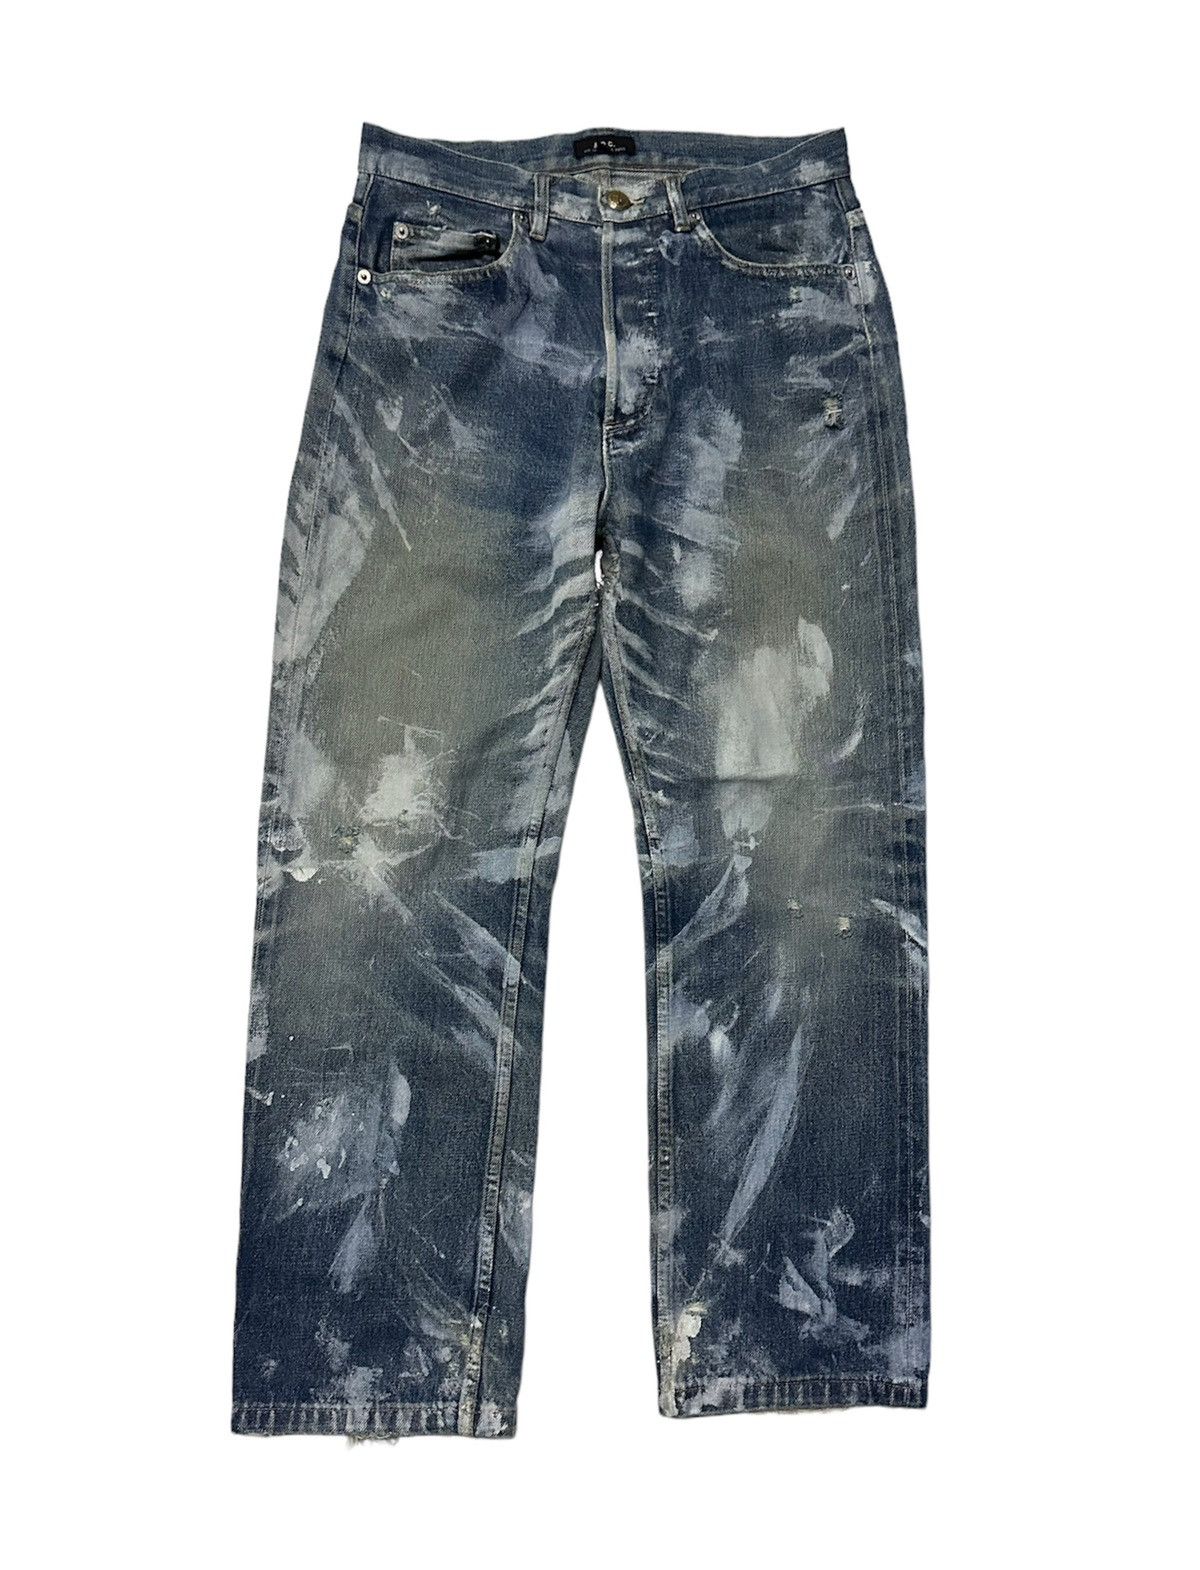 A.P.C. Vintage A.P.C custom paint selvedge denim jeans | Grailed